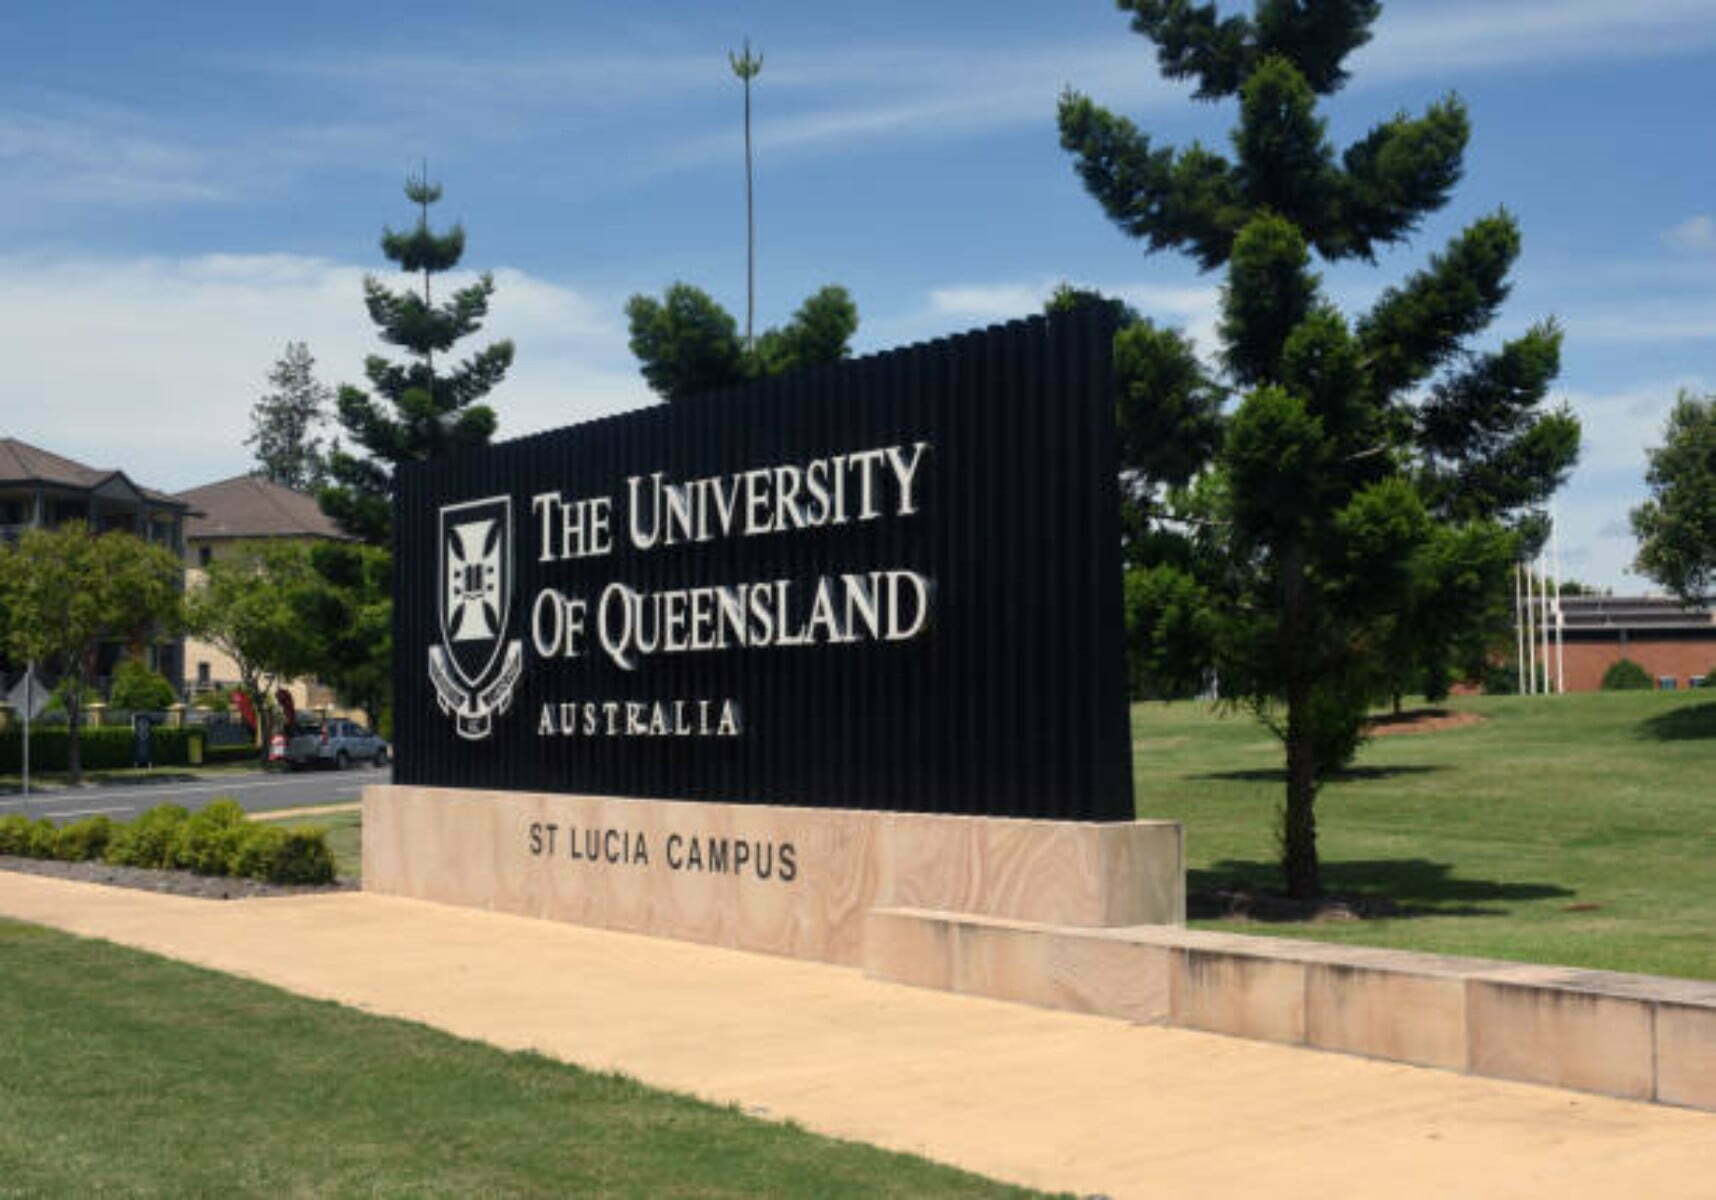 University of Queensland Postgraduate Research Scholarship 2022-2023